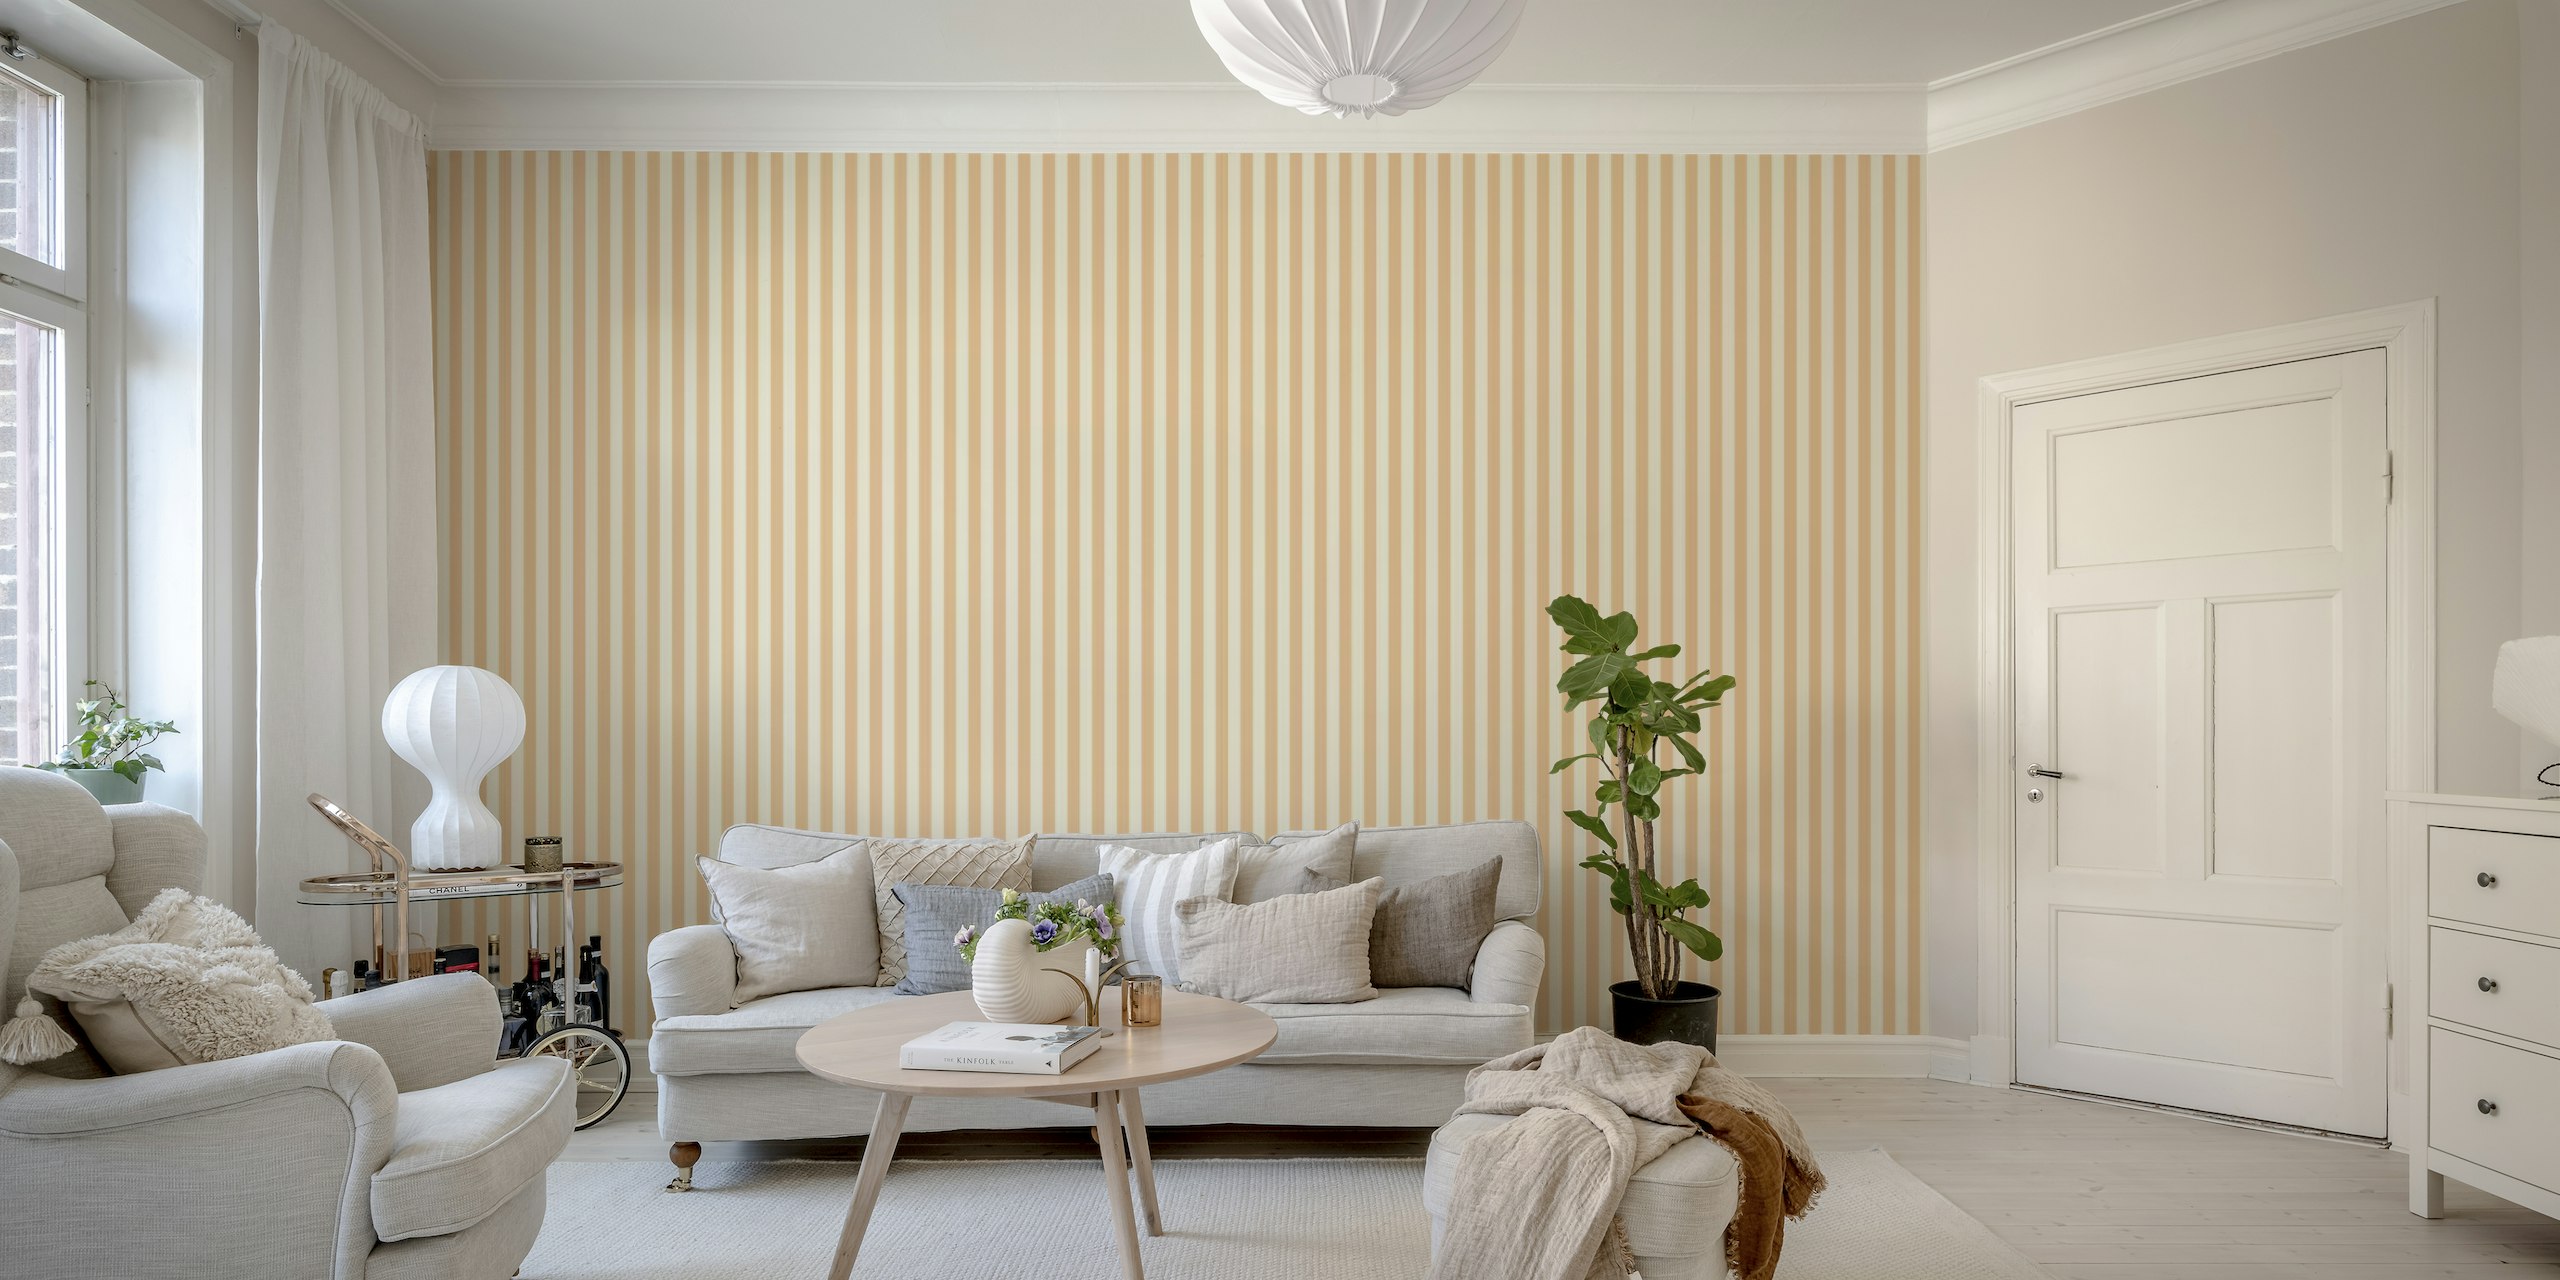 Stripes Normal Peach Fuzz - Koskematon seinämaalaus pehmeillä persikan sävyillä ja minimalistisella muotoilulla